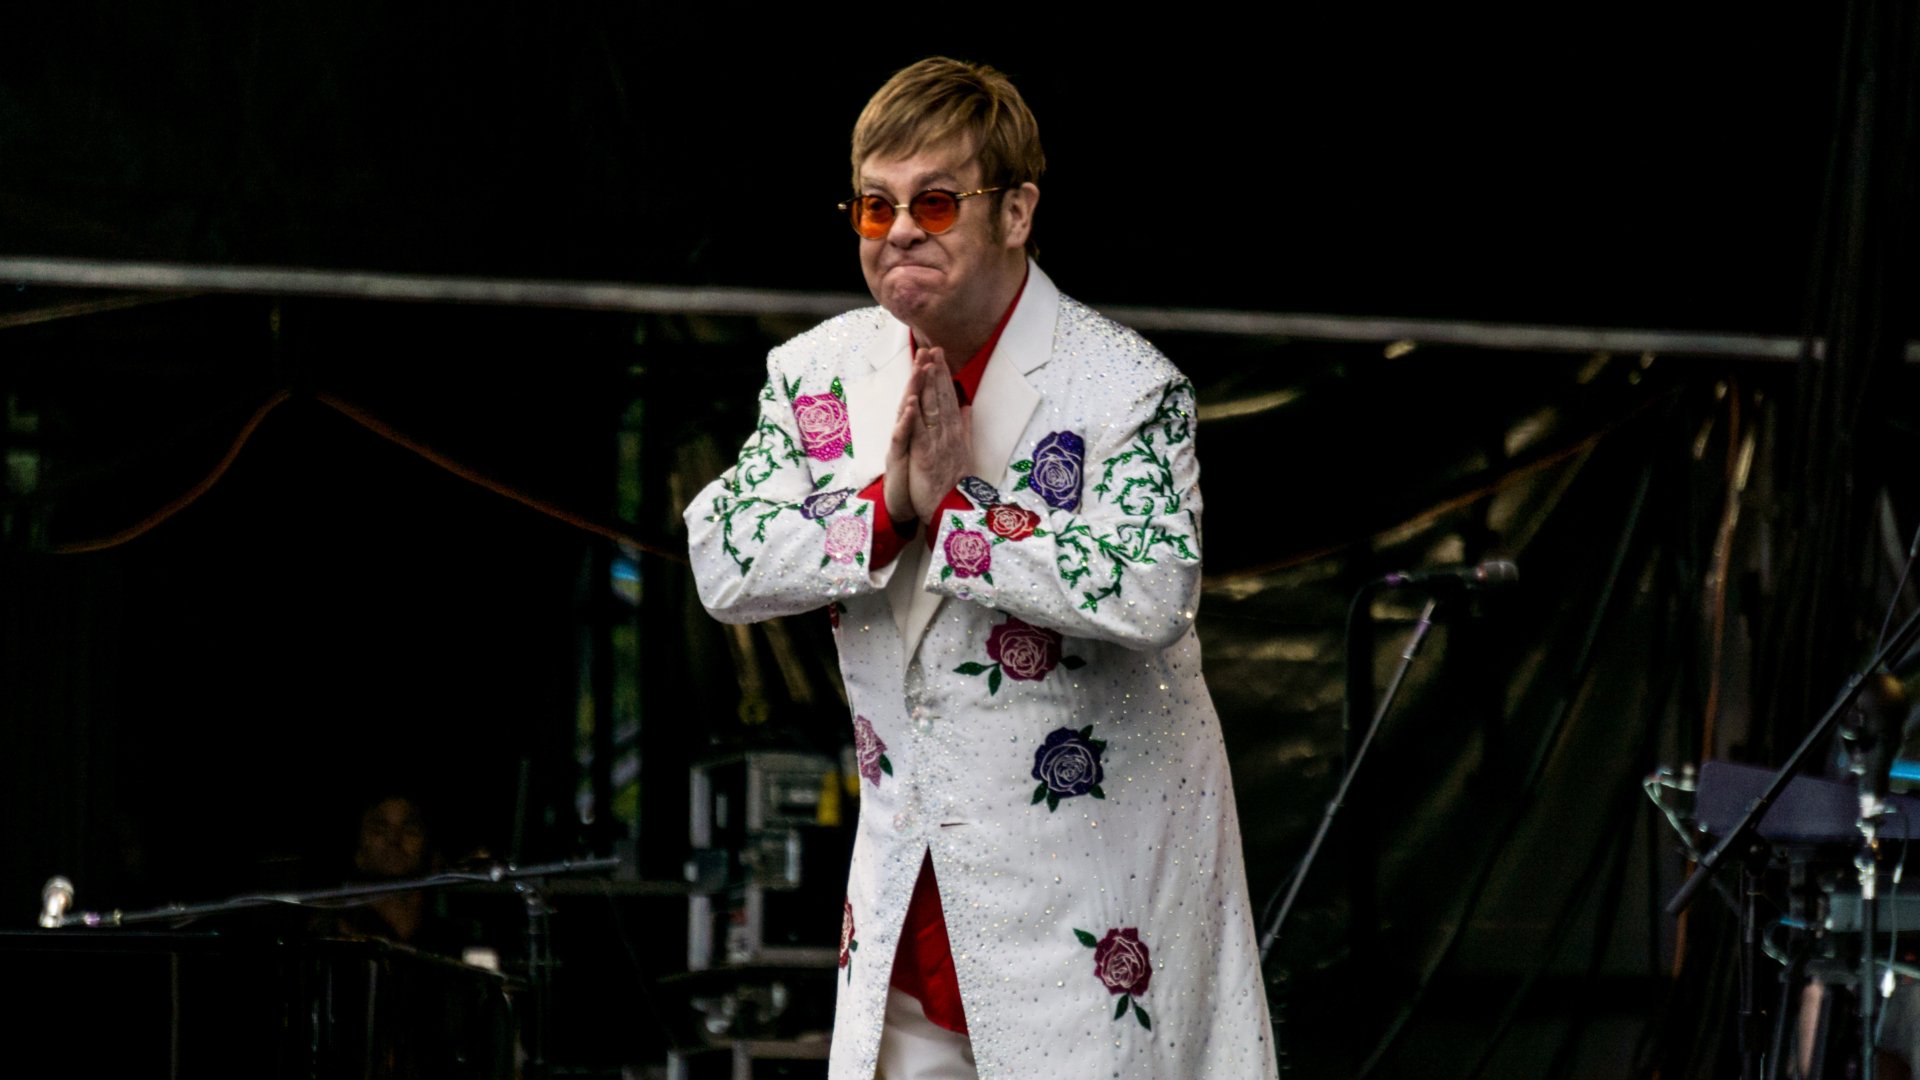 Concert d'Elton John a Barcelona: 10 curiositats que et sorprendran